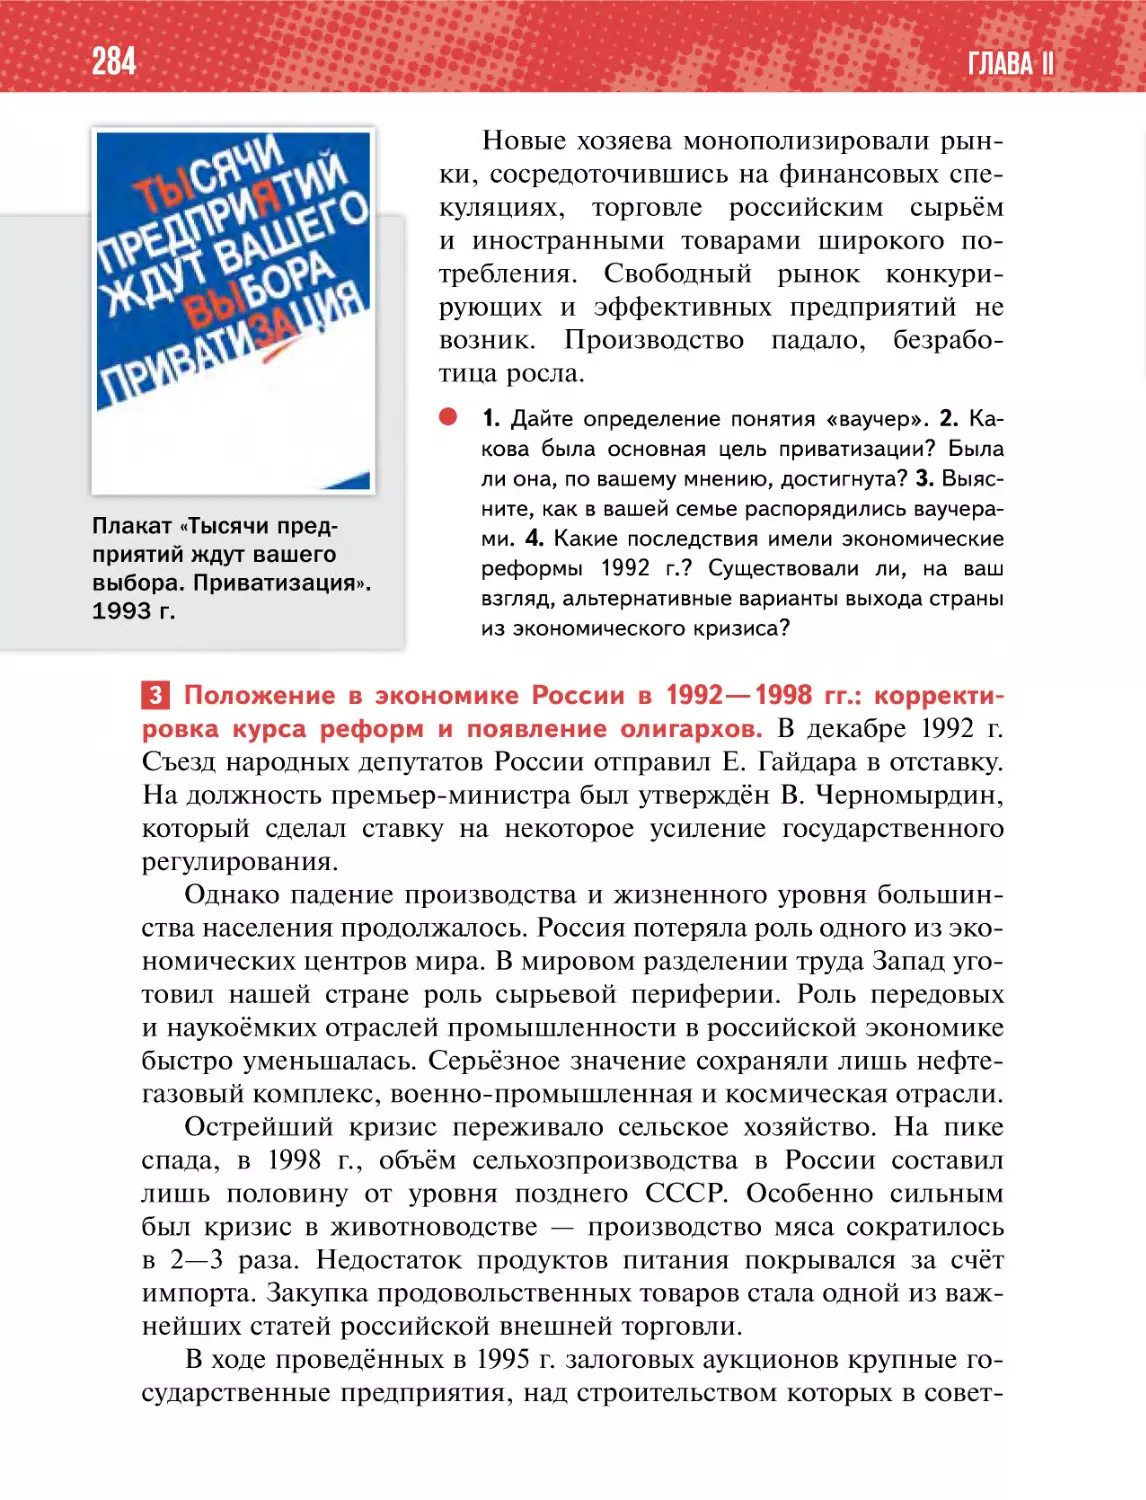 3 Положение в экономике России в 1992—1998 гг.